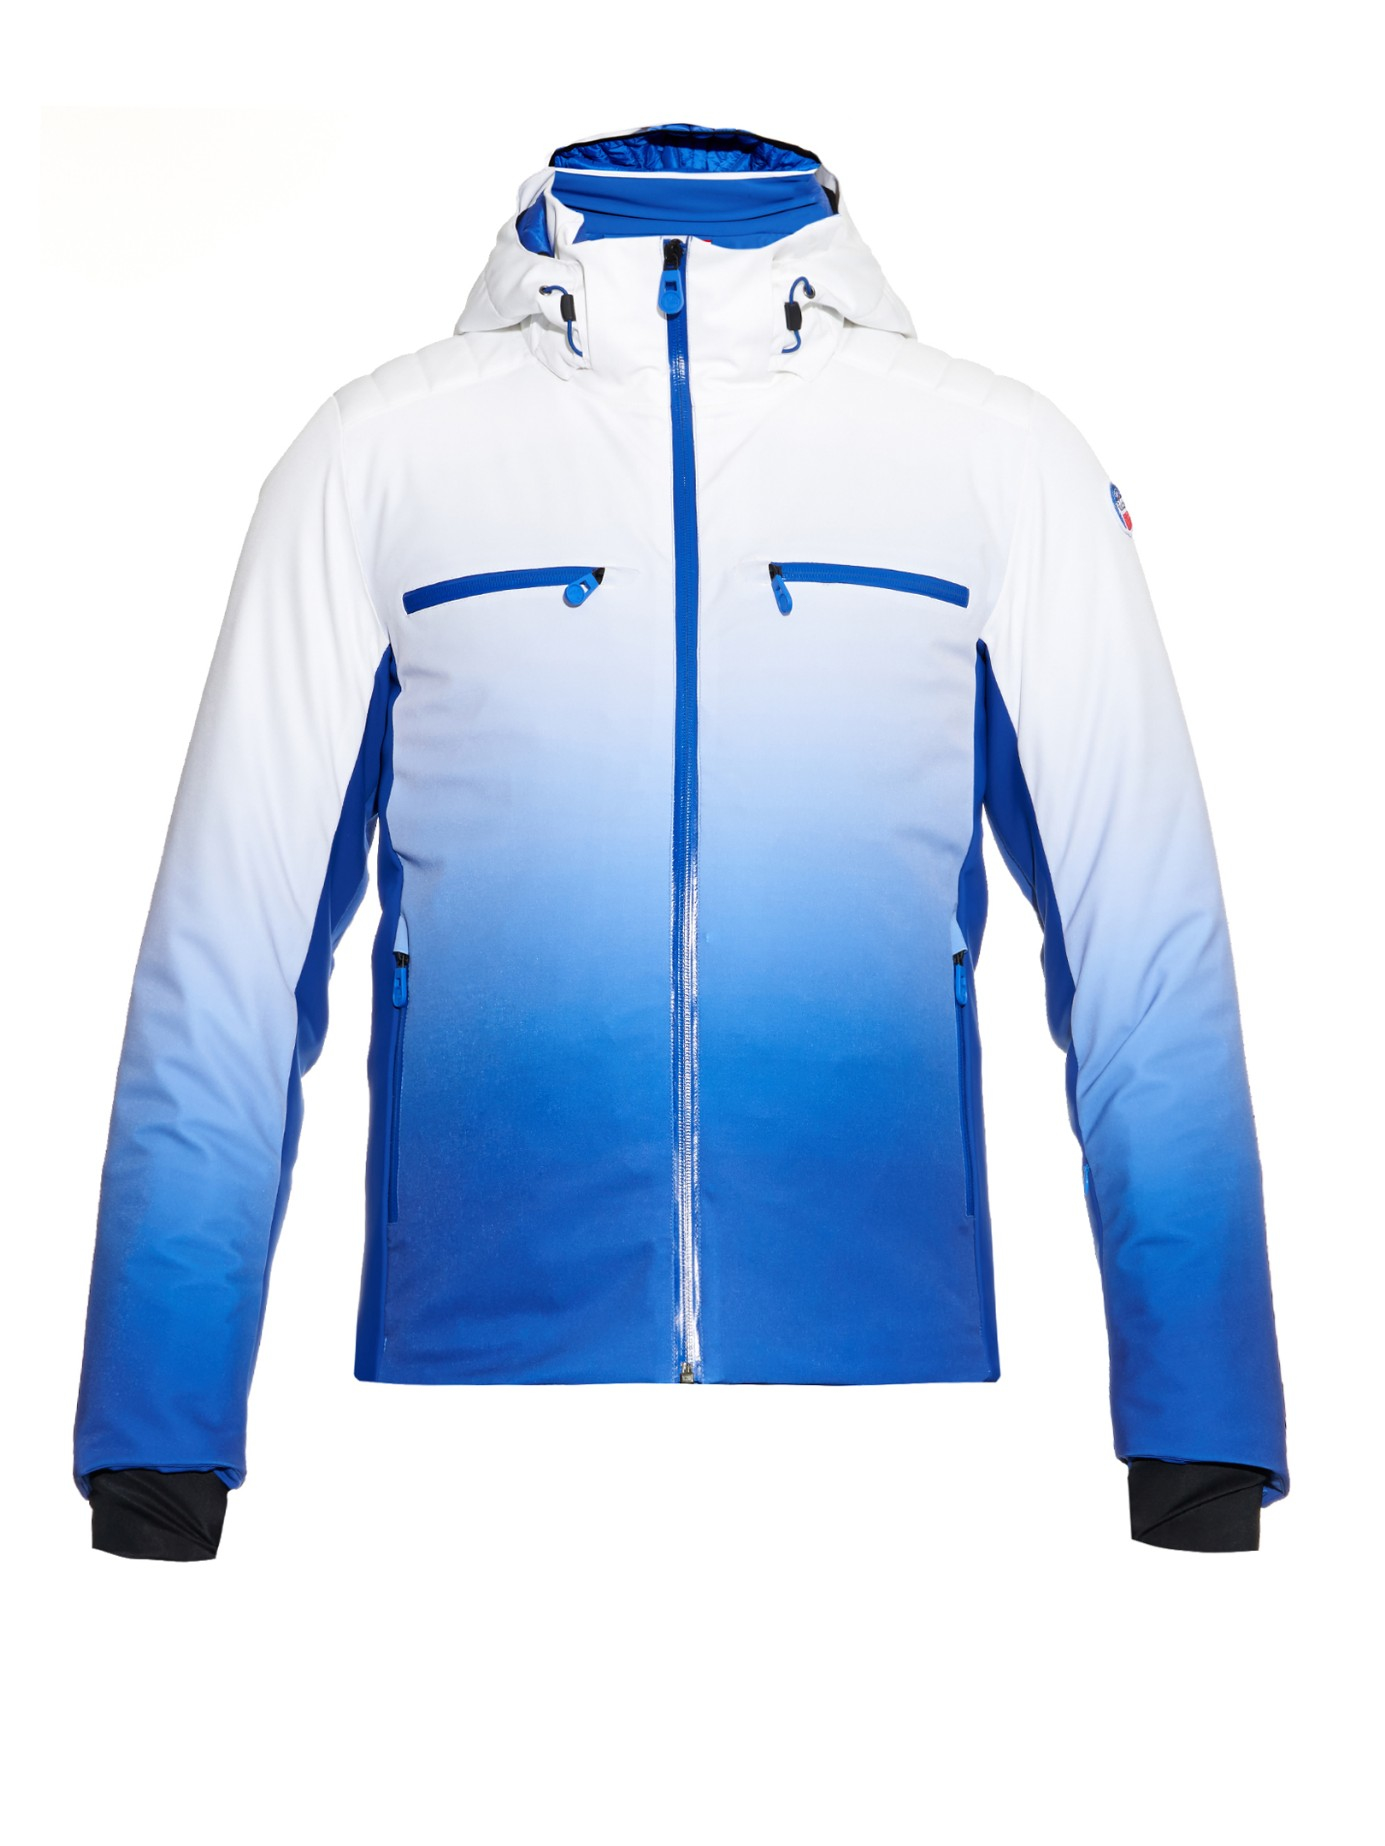 Fusalp Synthetic La Clusaz Ski Jacket in Blue for Men - Lyst